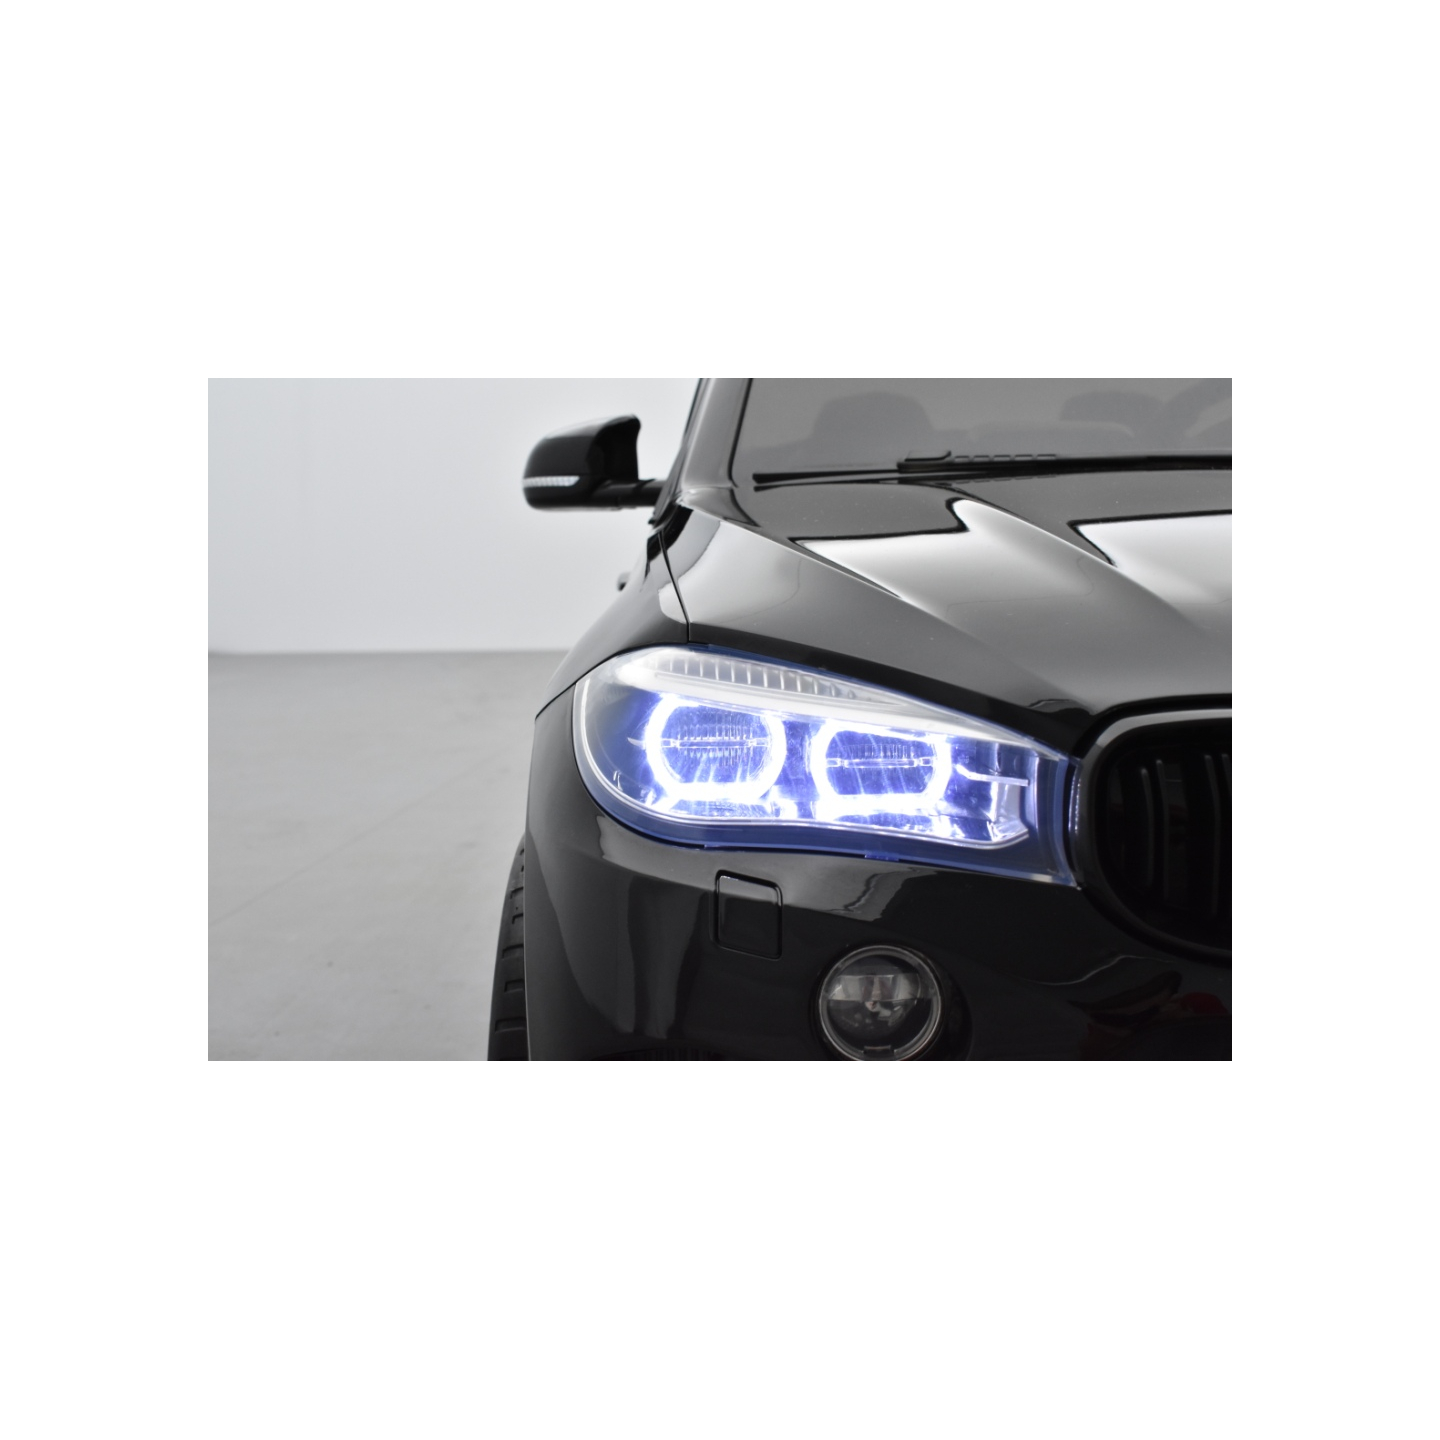 BMW X6 M Noir Métallisée 2 places, voiture électrique enfant , 12 volts - 10AH, 2 moteurs